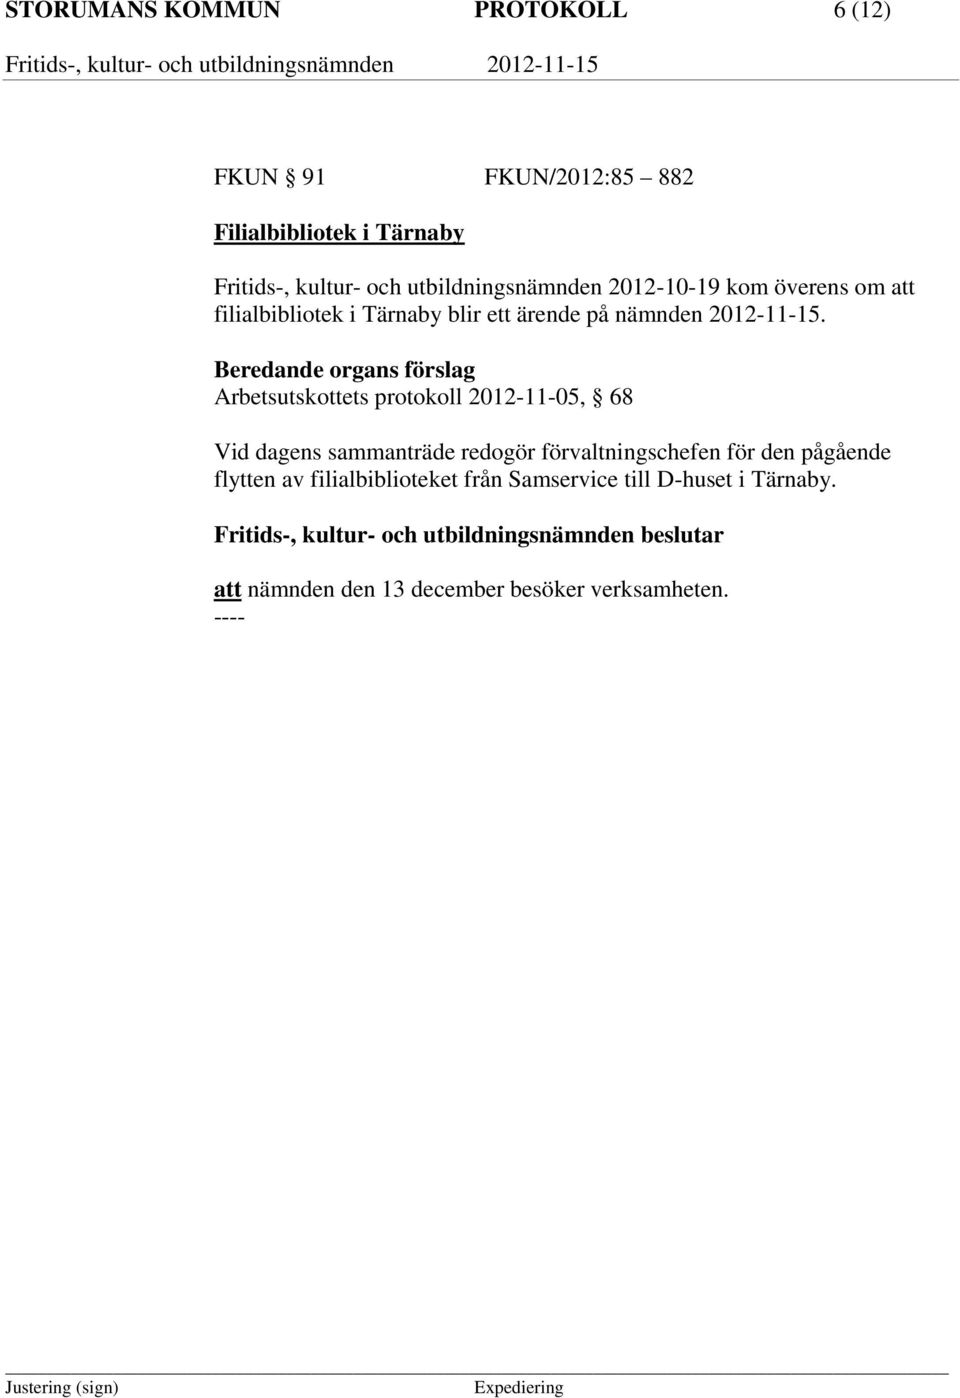 Beredande organs förslag Arbetsutskottets protokoll 2012-11-05, 68 Vid dagens sammanträde redogör förvaltningschefen